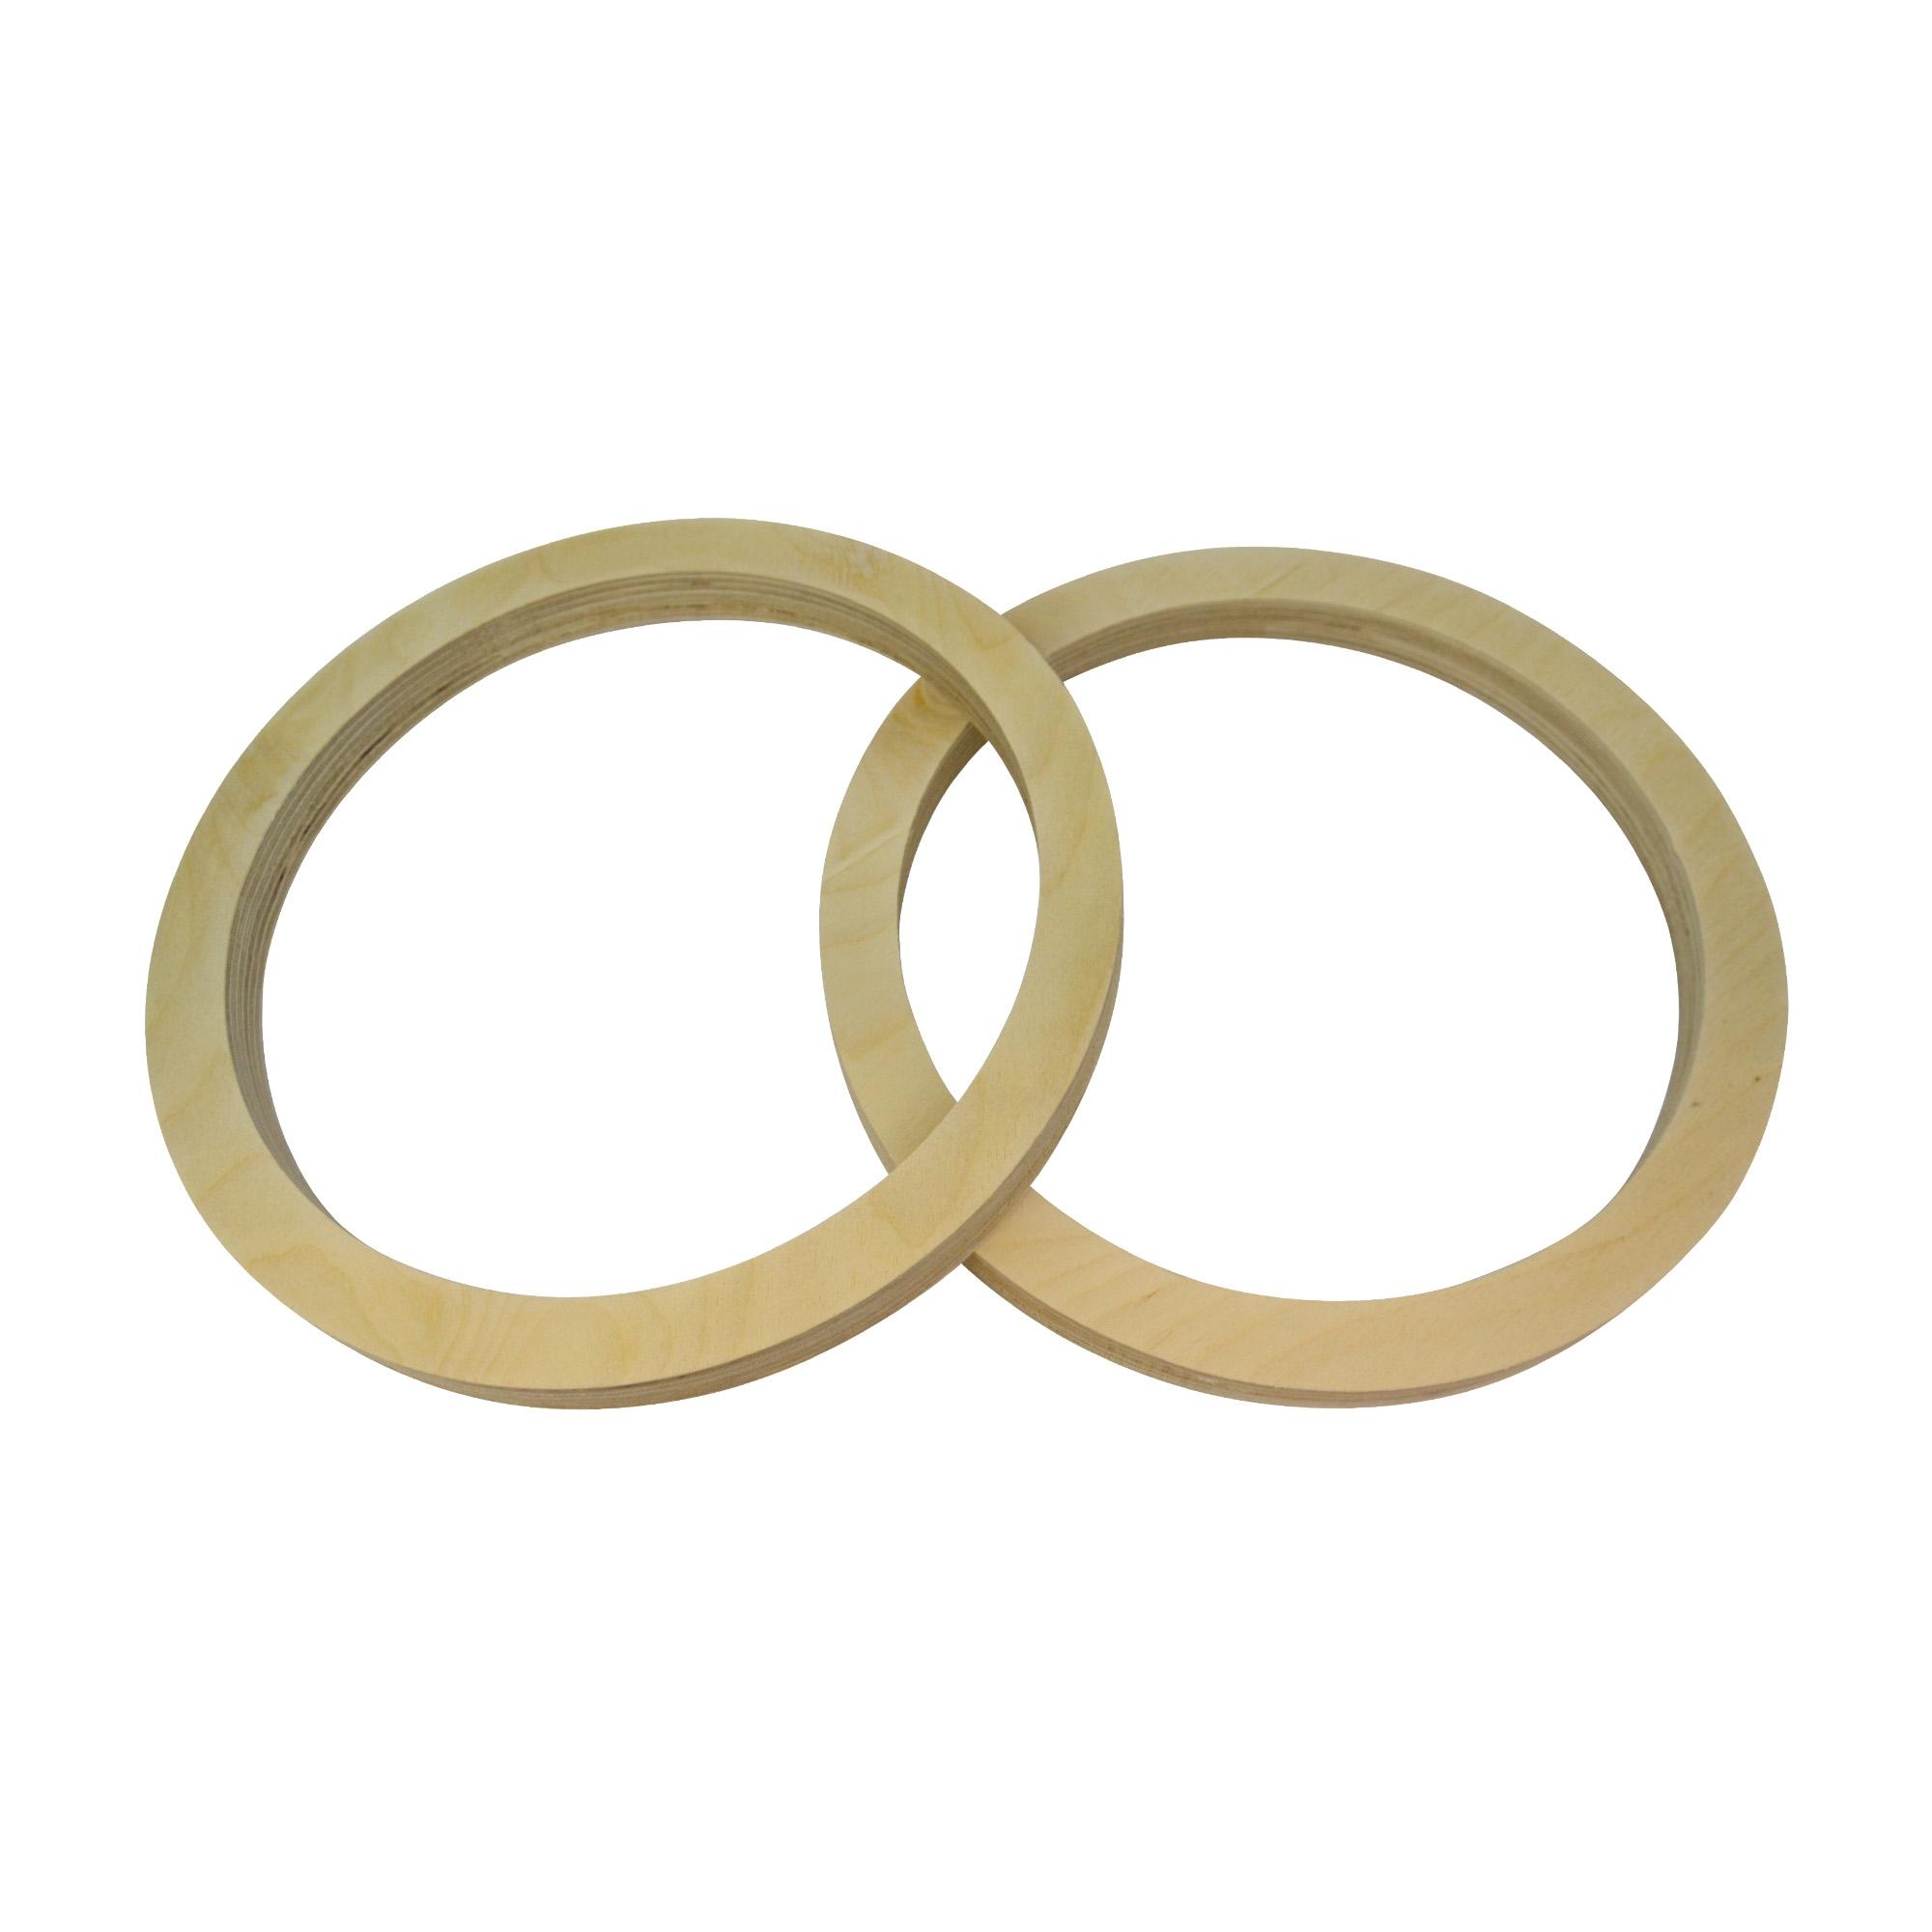 Кольцо переходное универсальное Вега 6х9 (Ф18.6х9-1) цена и фото